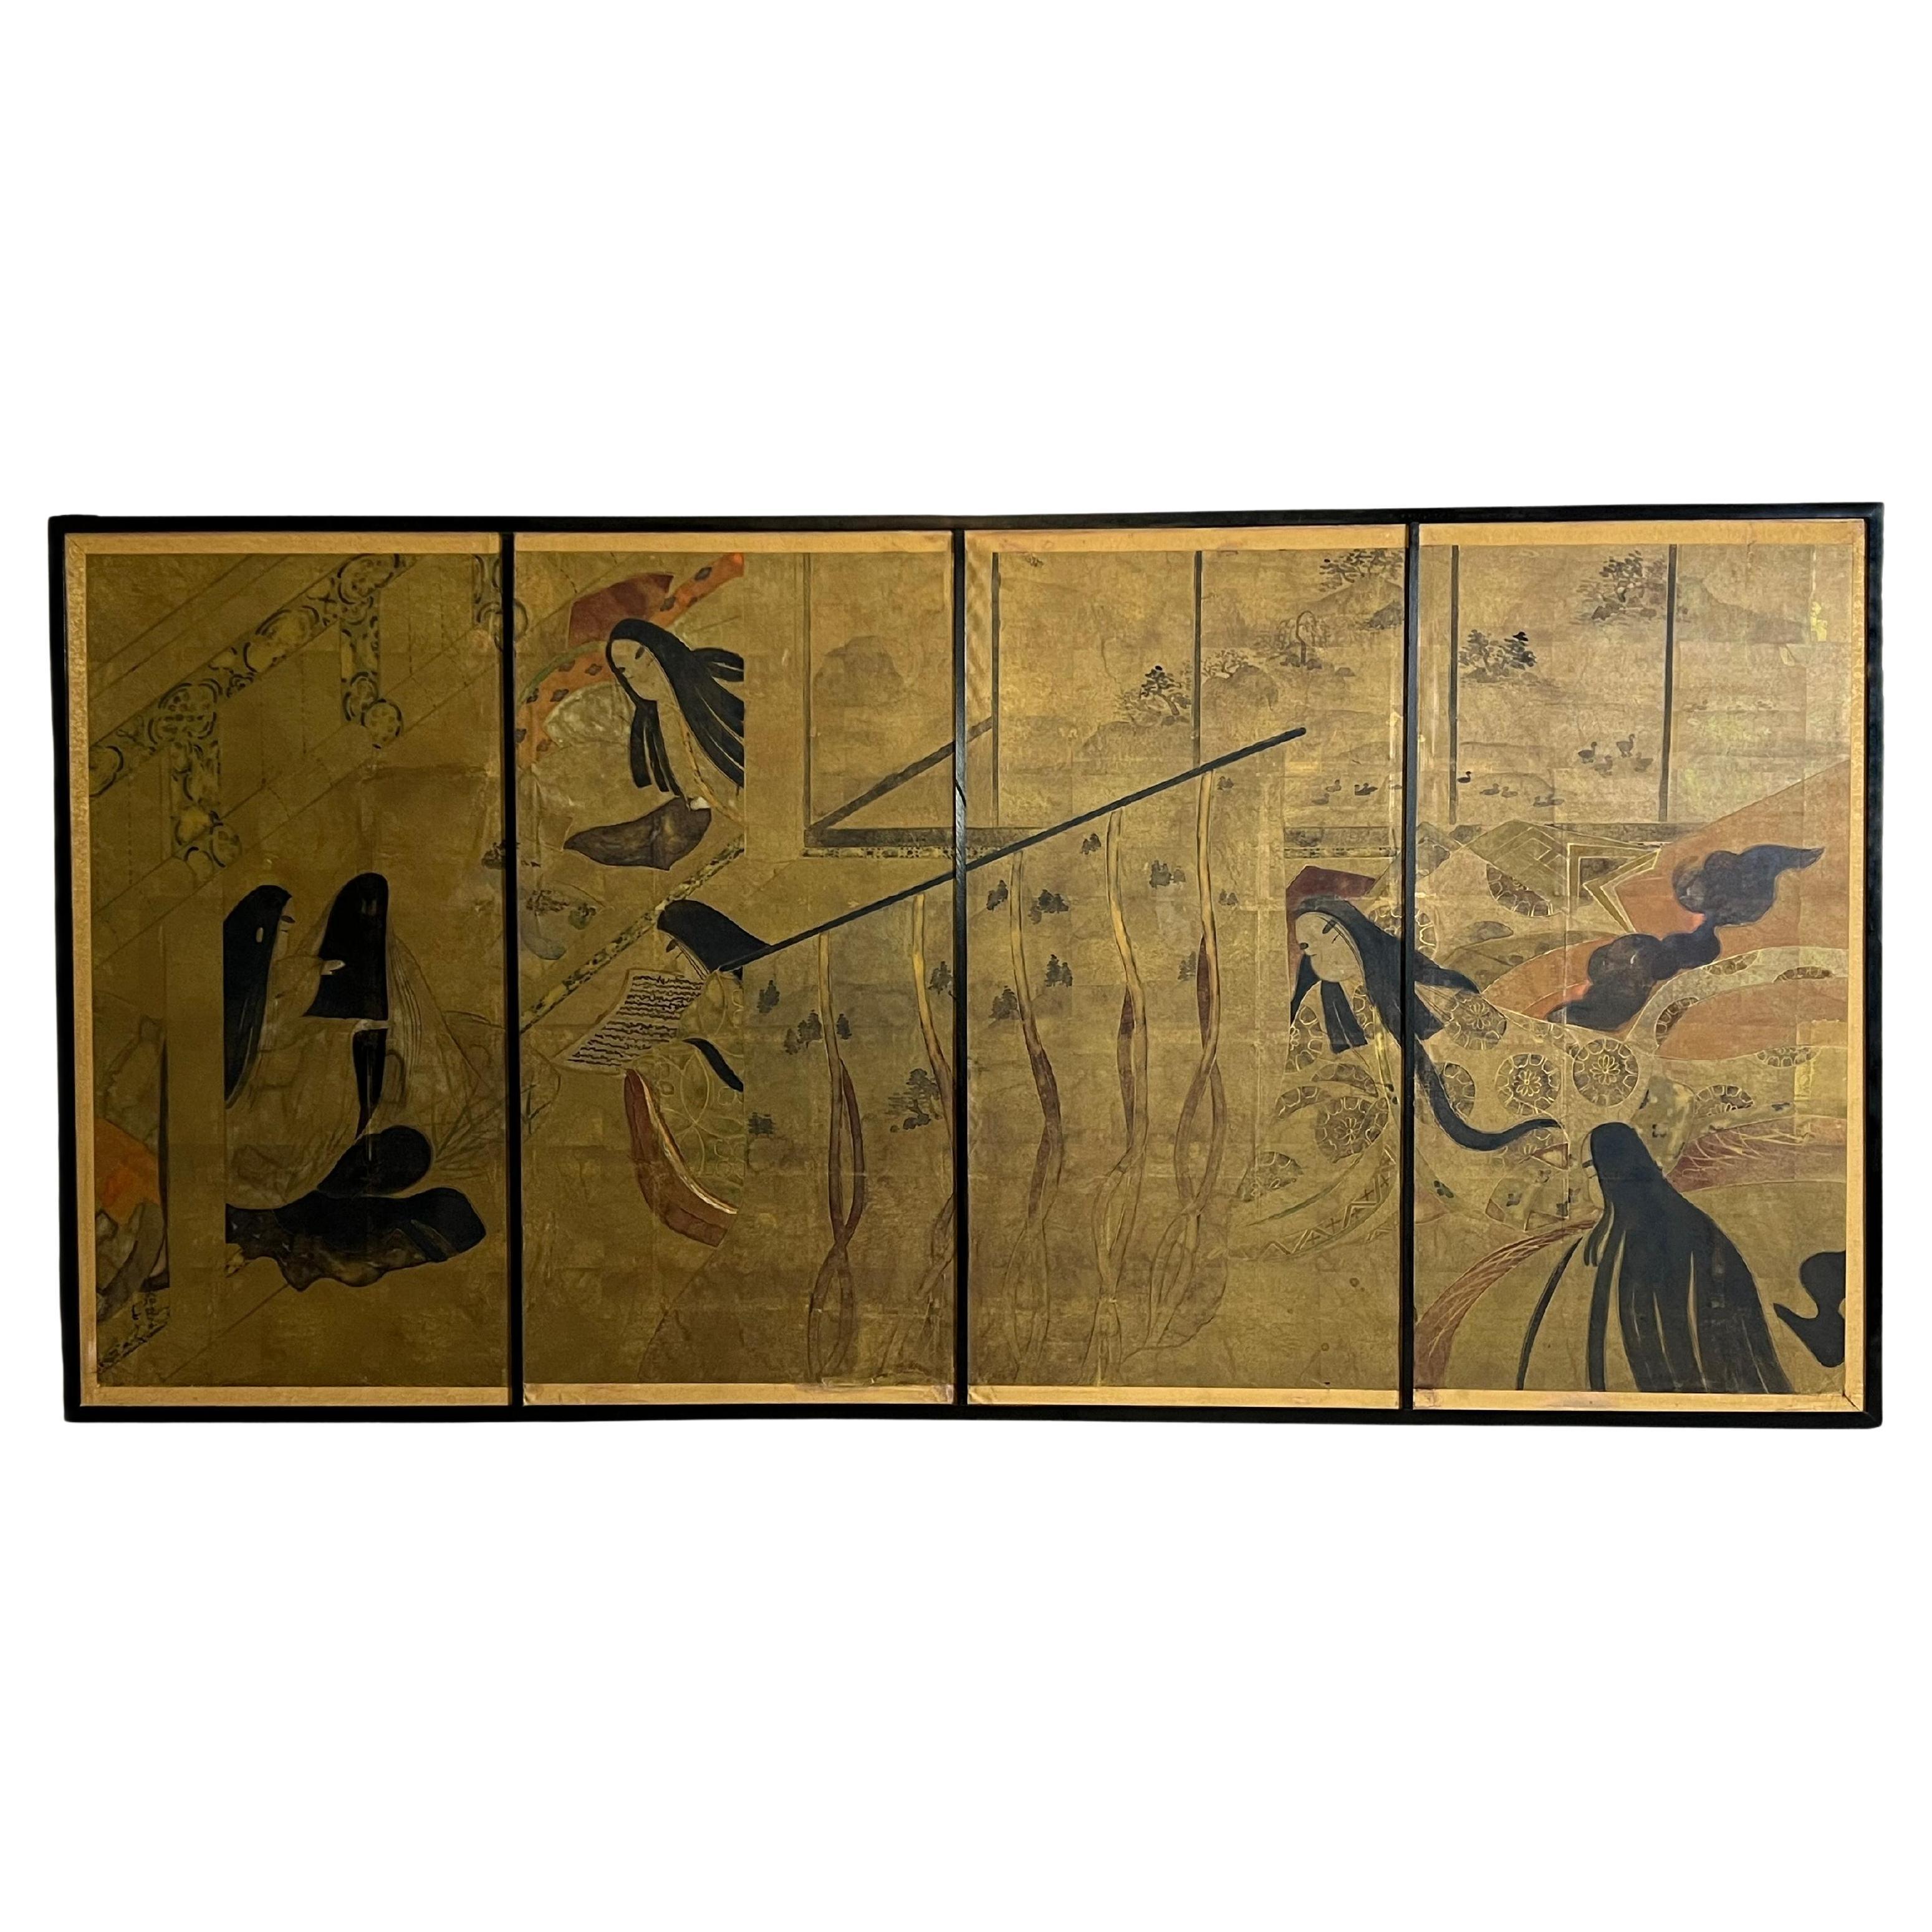 Grande lithographie d'une scène japonaise d'après le conte de Genji